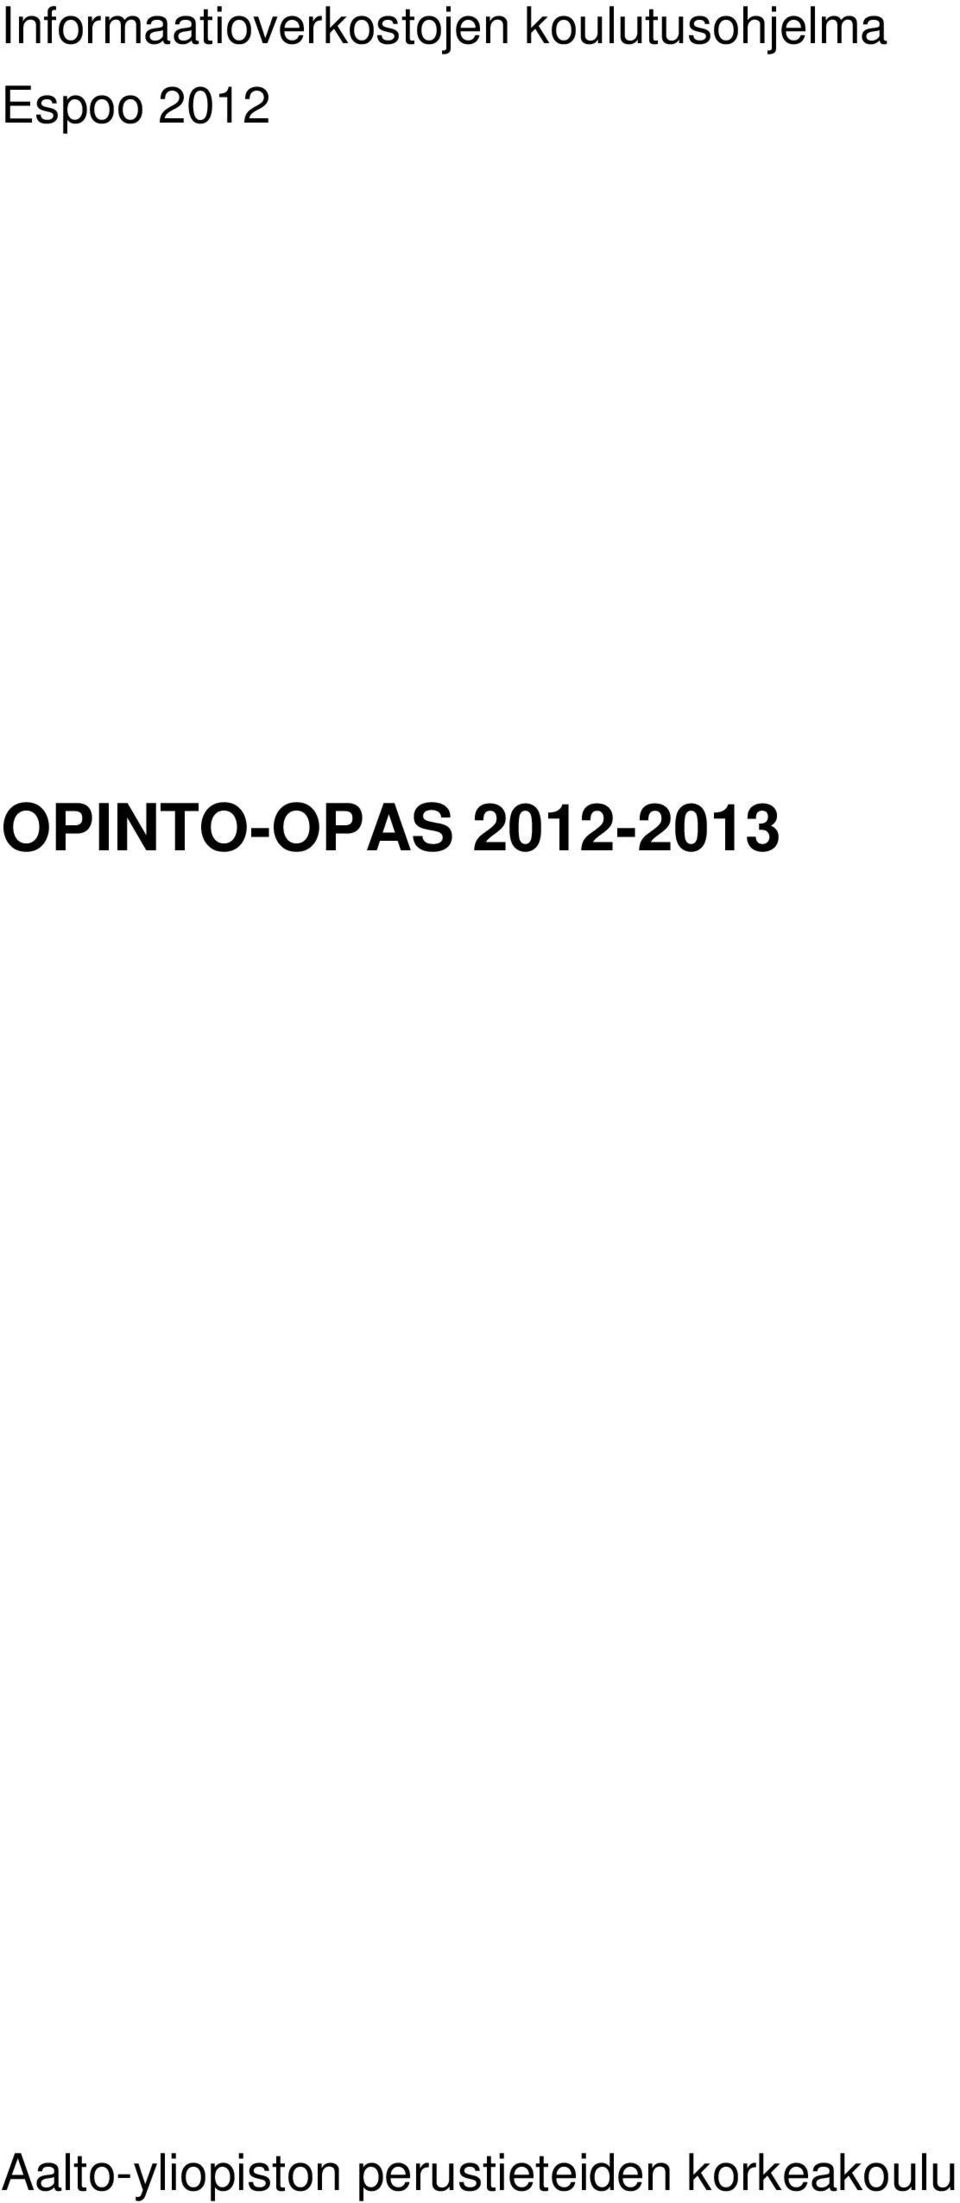 OPINTO-OPAS 2012-2013